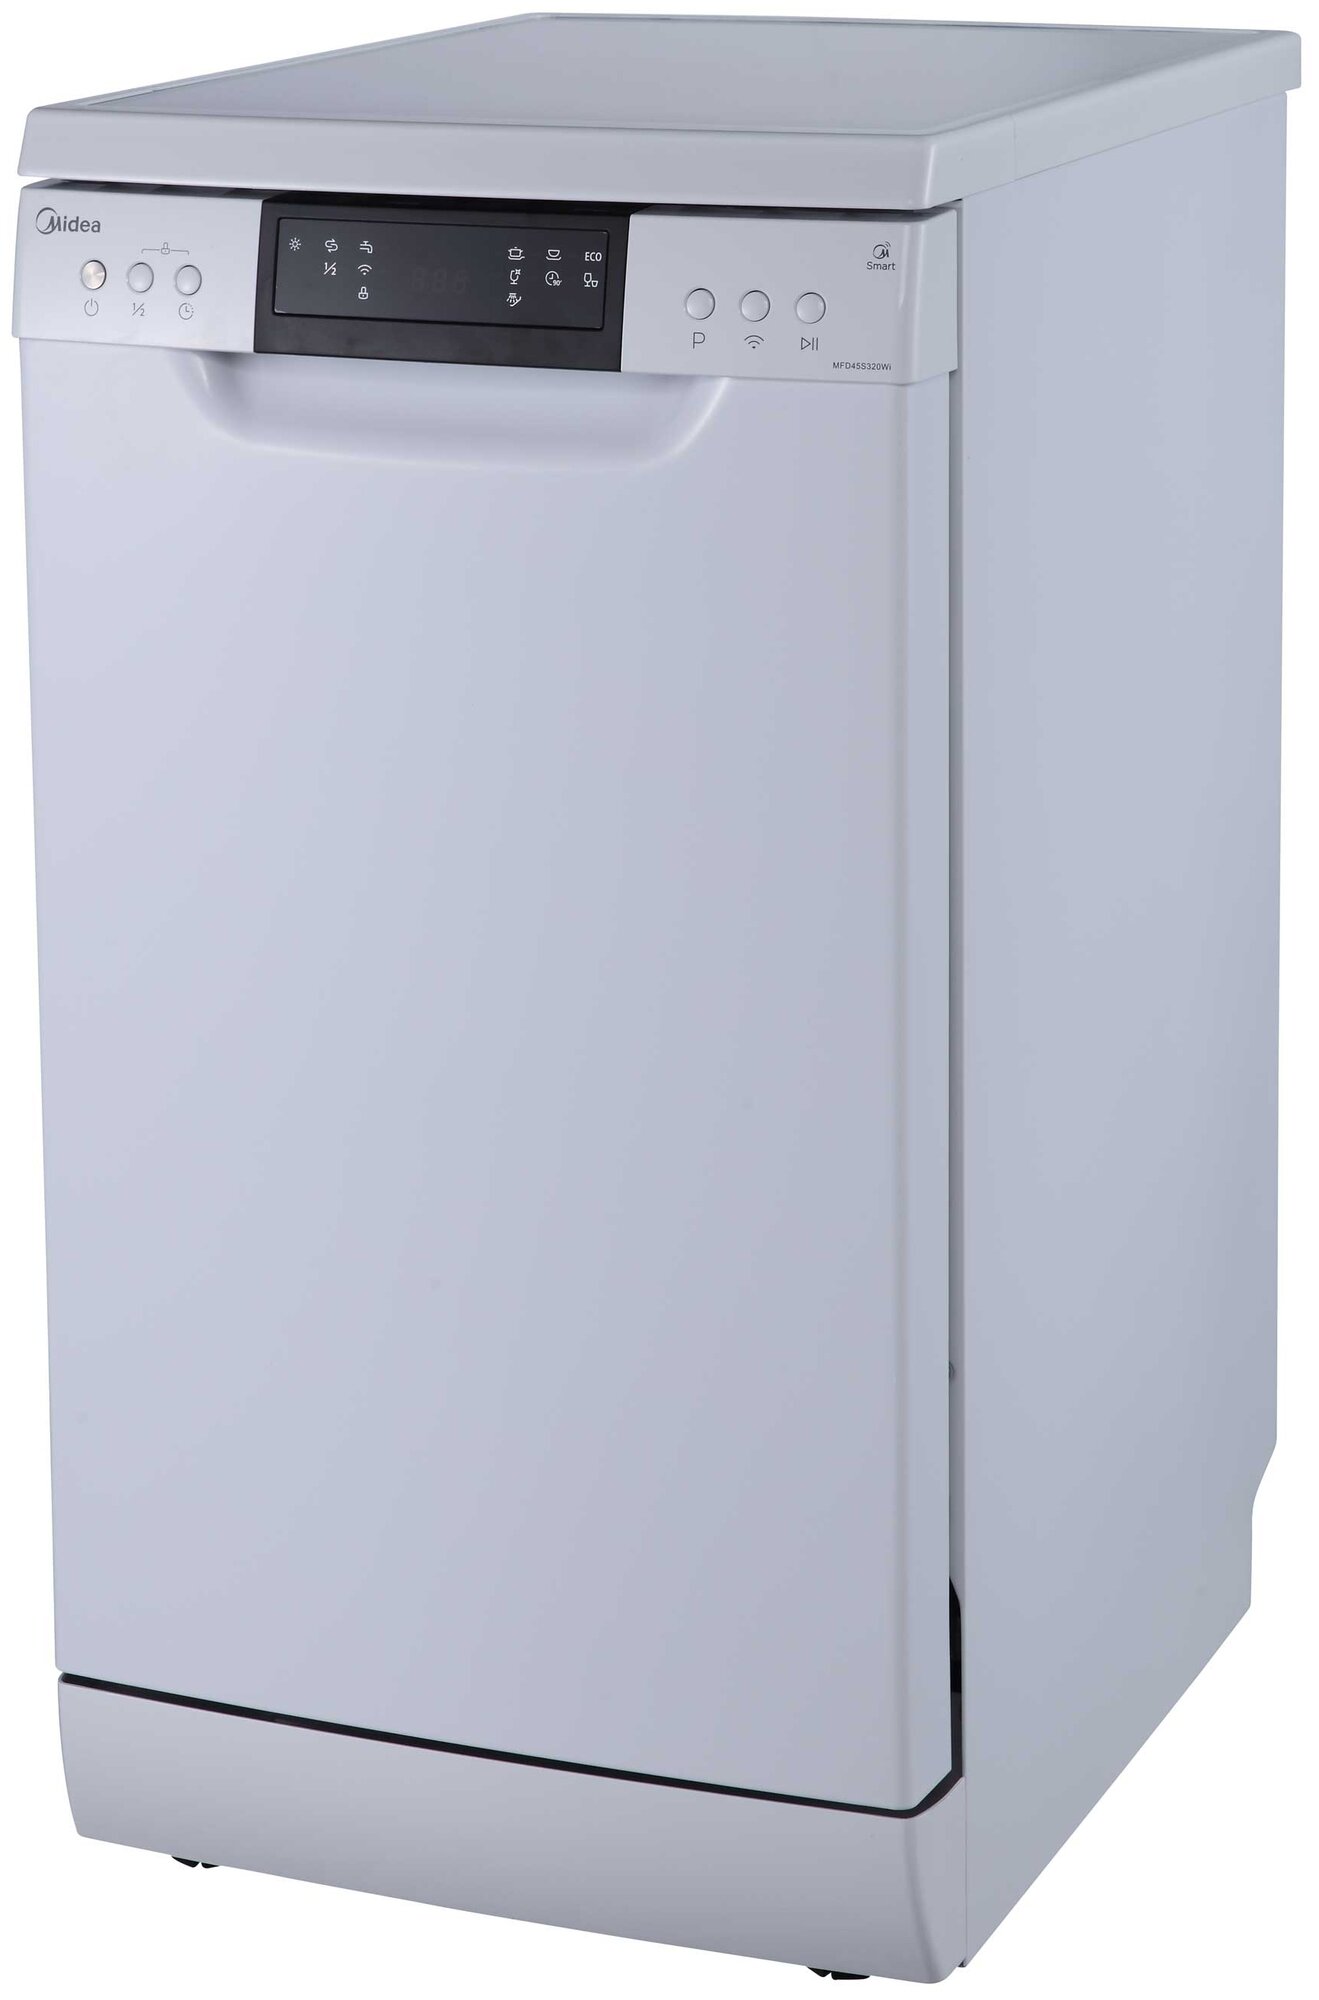 Посудомоечная машина Midea MFD45S320Wi, white